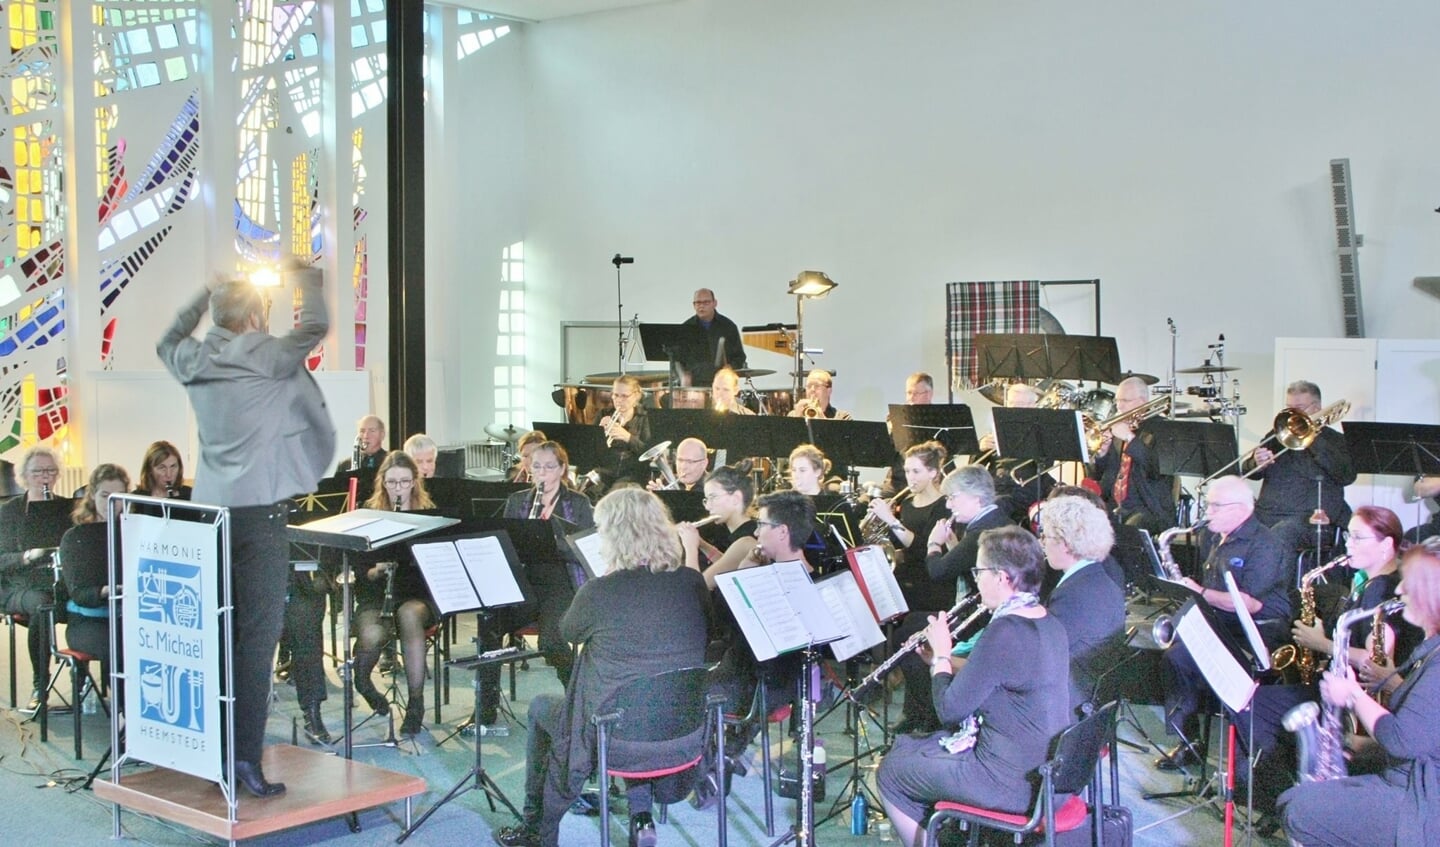 Harmonie St. Michaël is met Beleef Heemstede de organisator van het festival dat voor de tweede keer plaats vindt op het Wilhelminaplein.